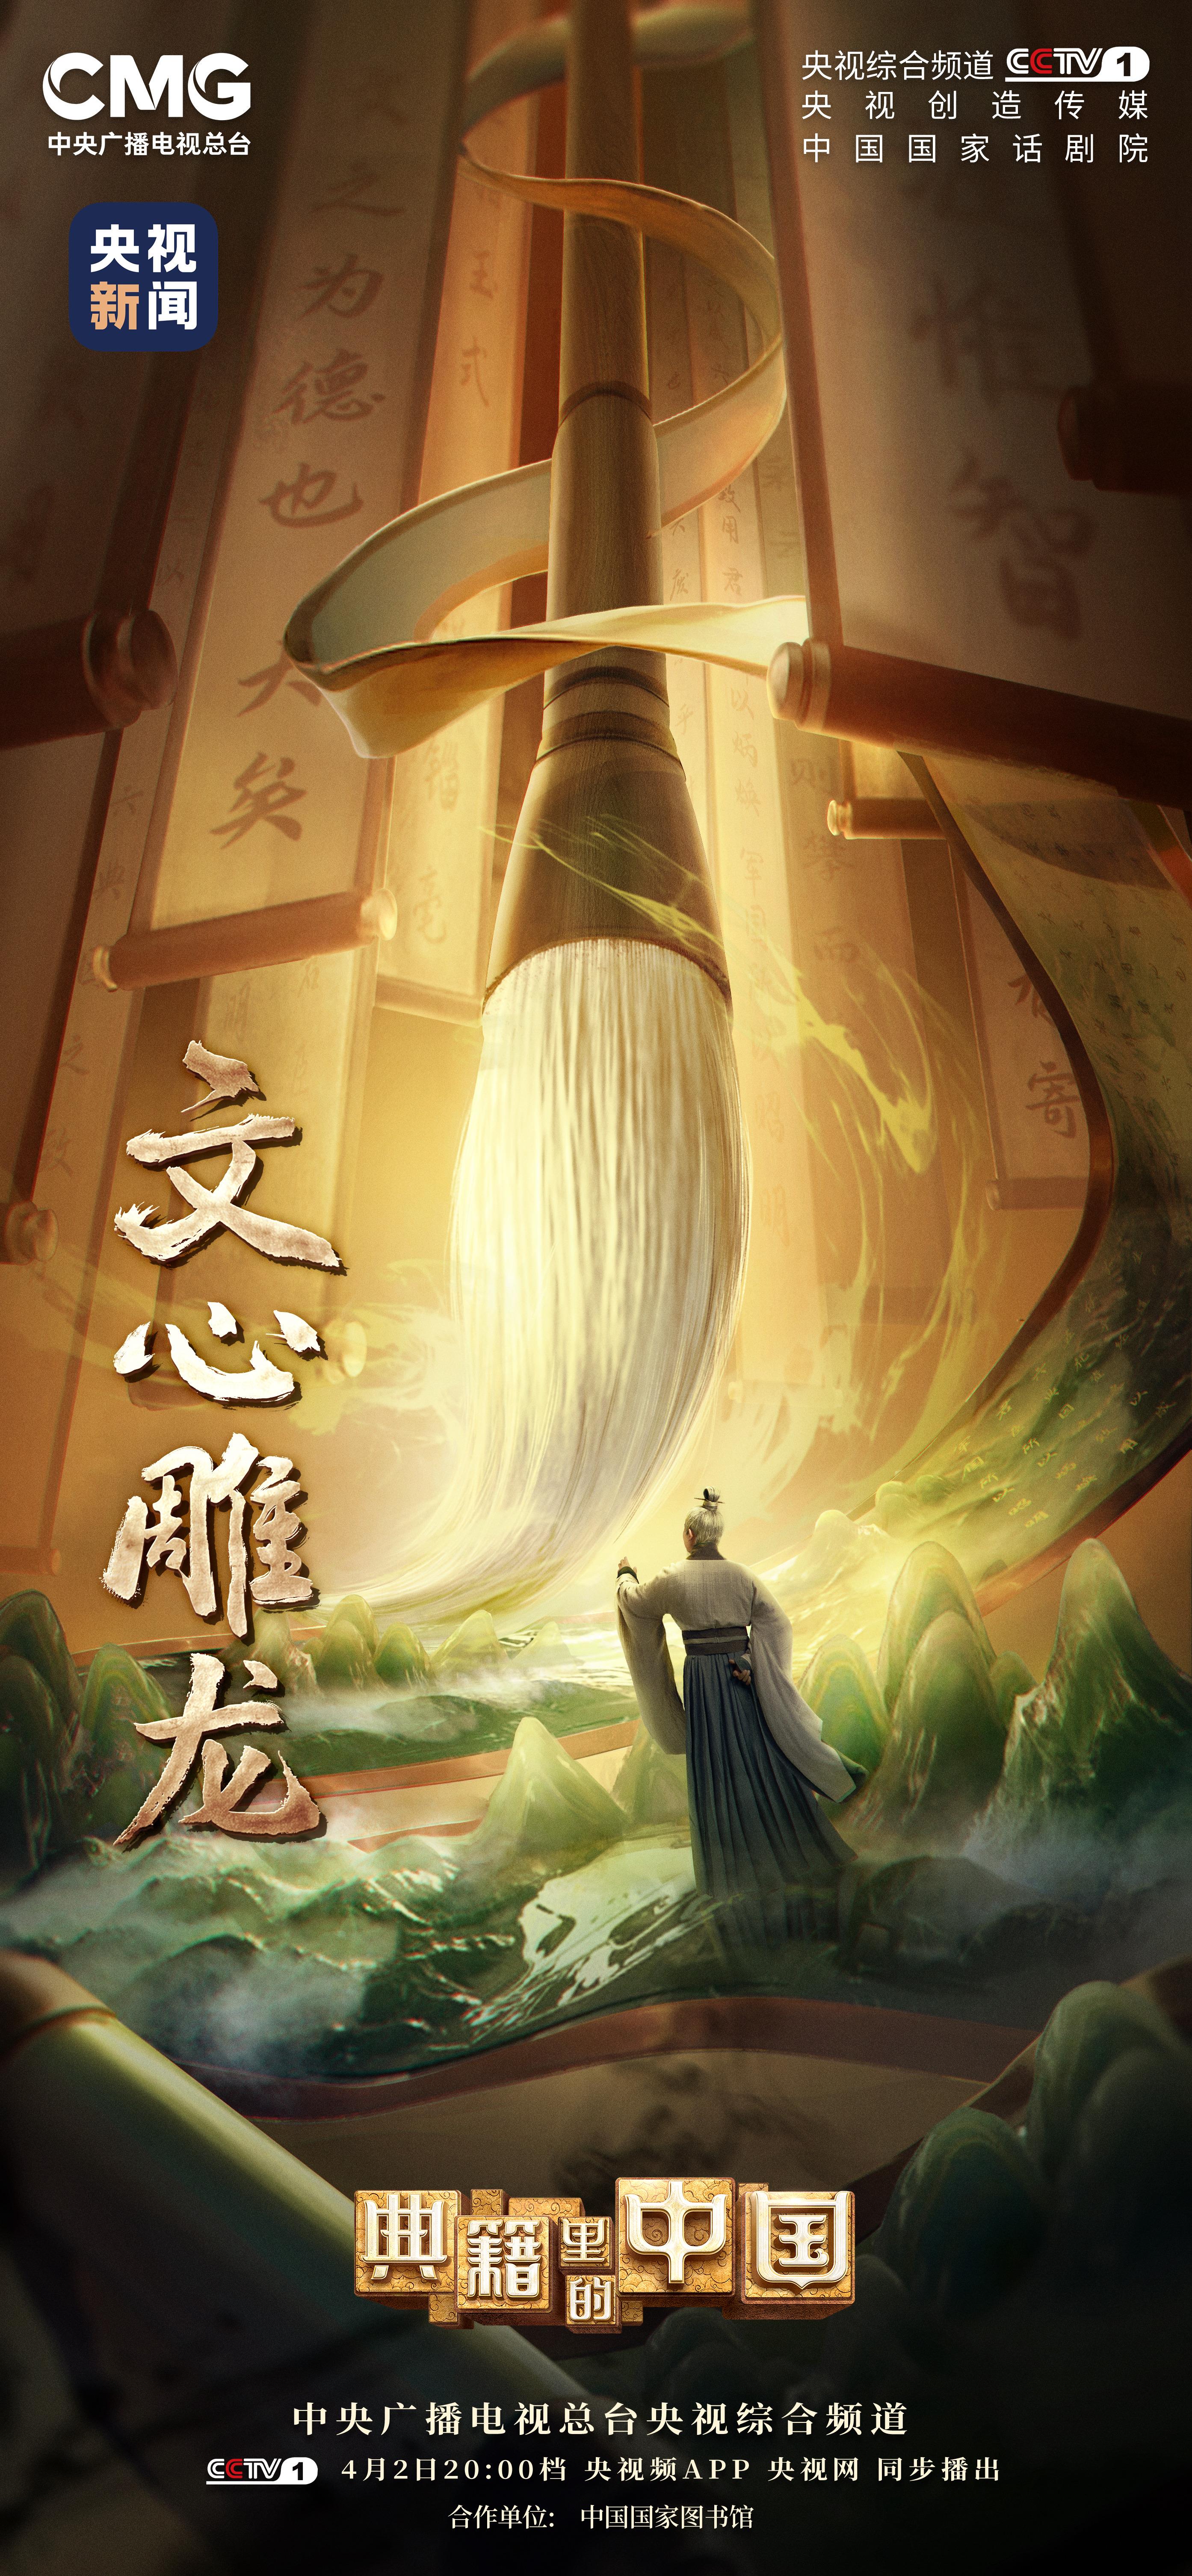 《典籍里的中国2》邀你共赴刘勰的“文学之梦”